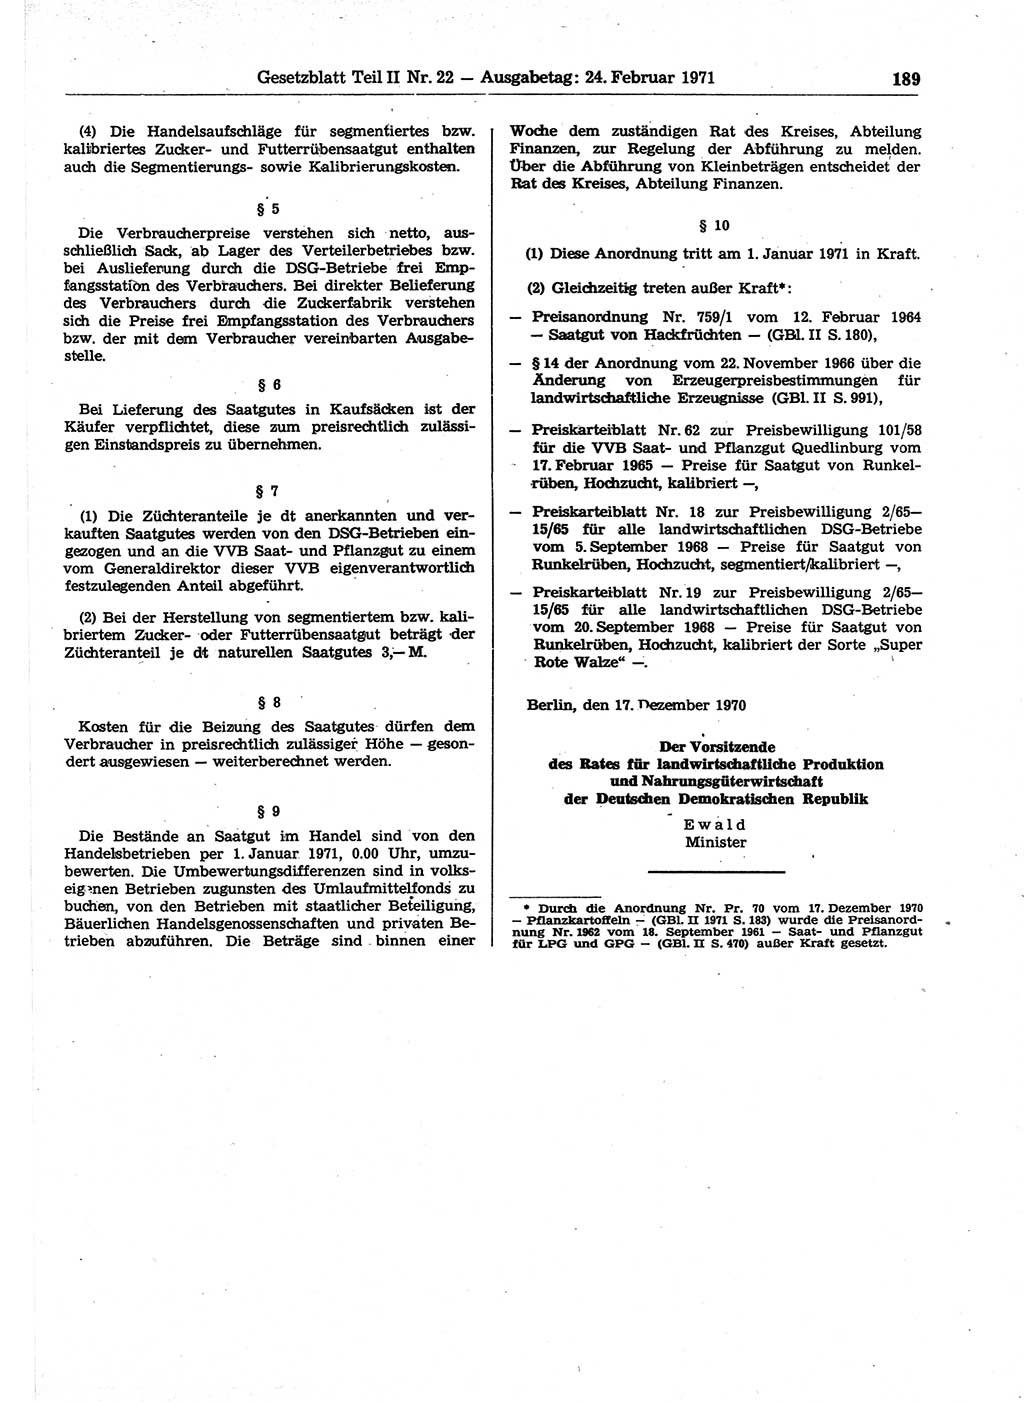 Gesetzblatt (GBl.) der Deutschen Demokratischen Republik (DDR) Teil ⅠⅠ 1971, Seite 189 (GBl. DDR ⅠⅠ 1971, S. 189)